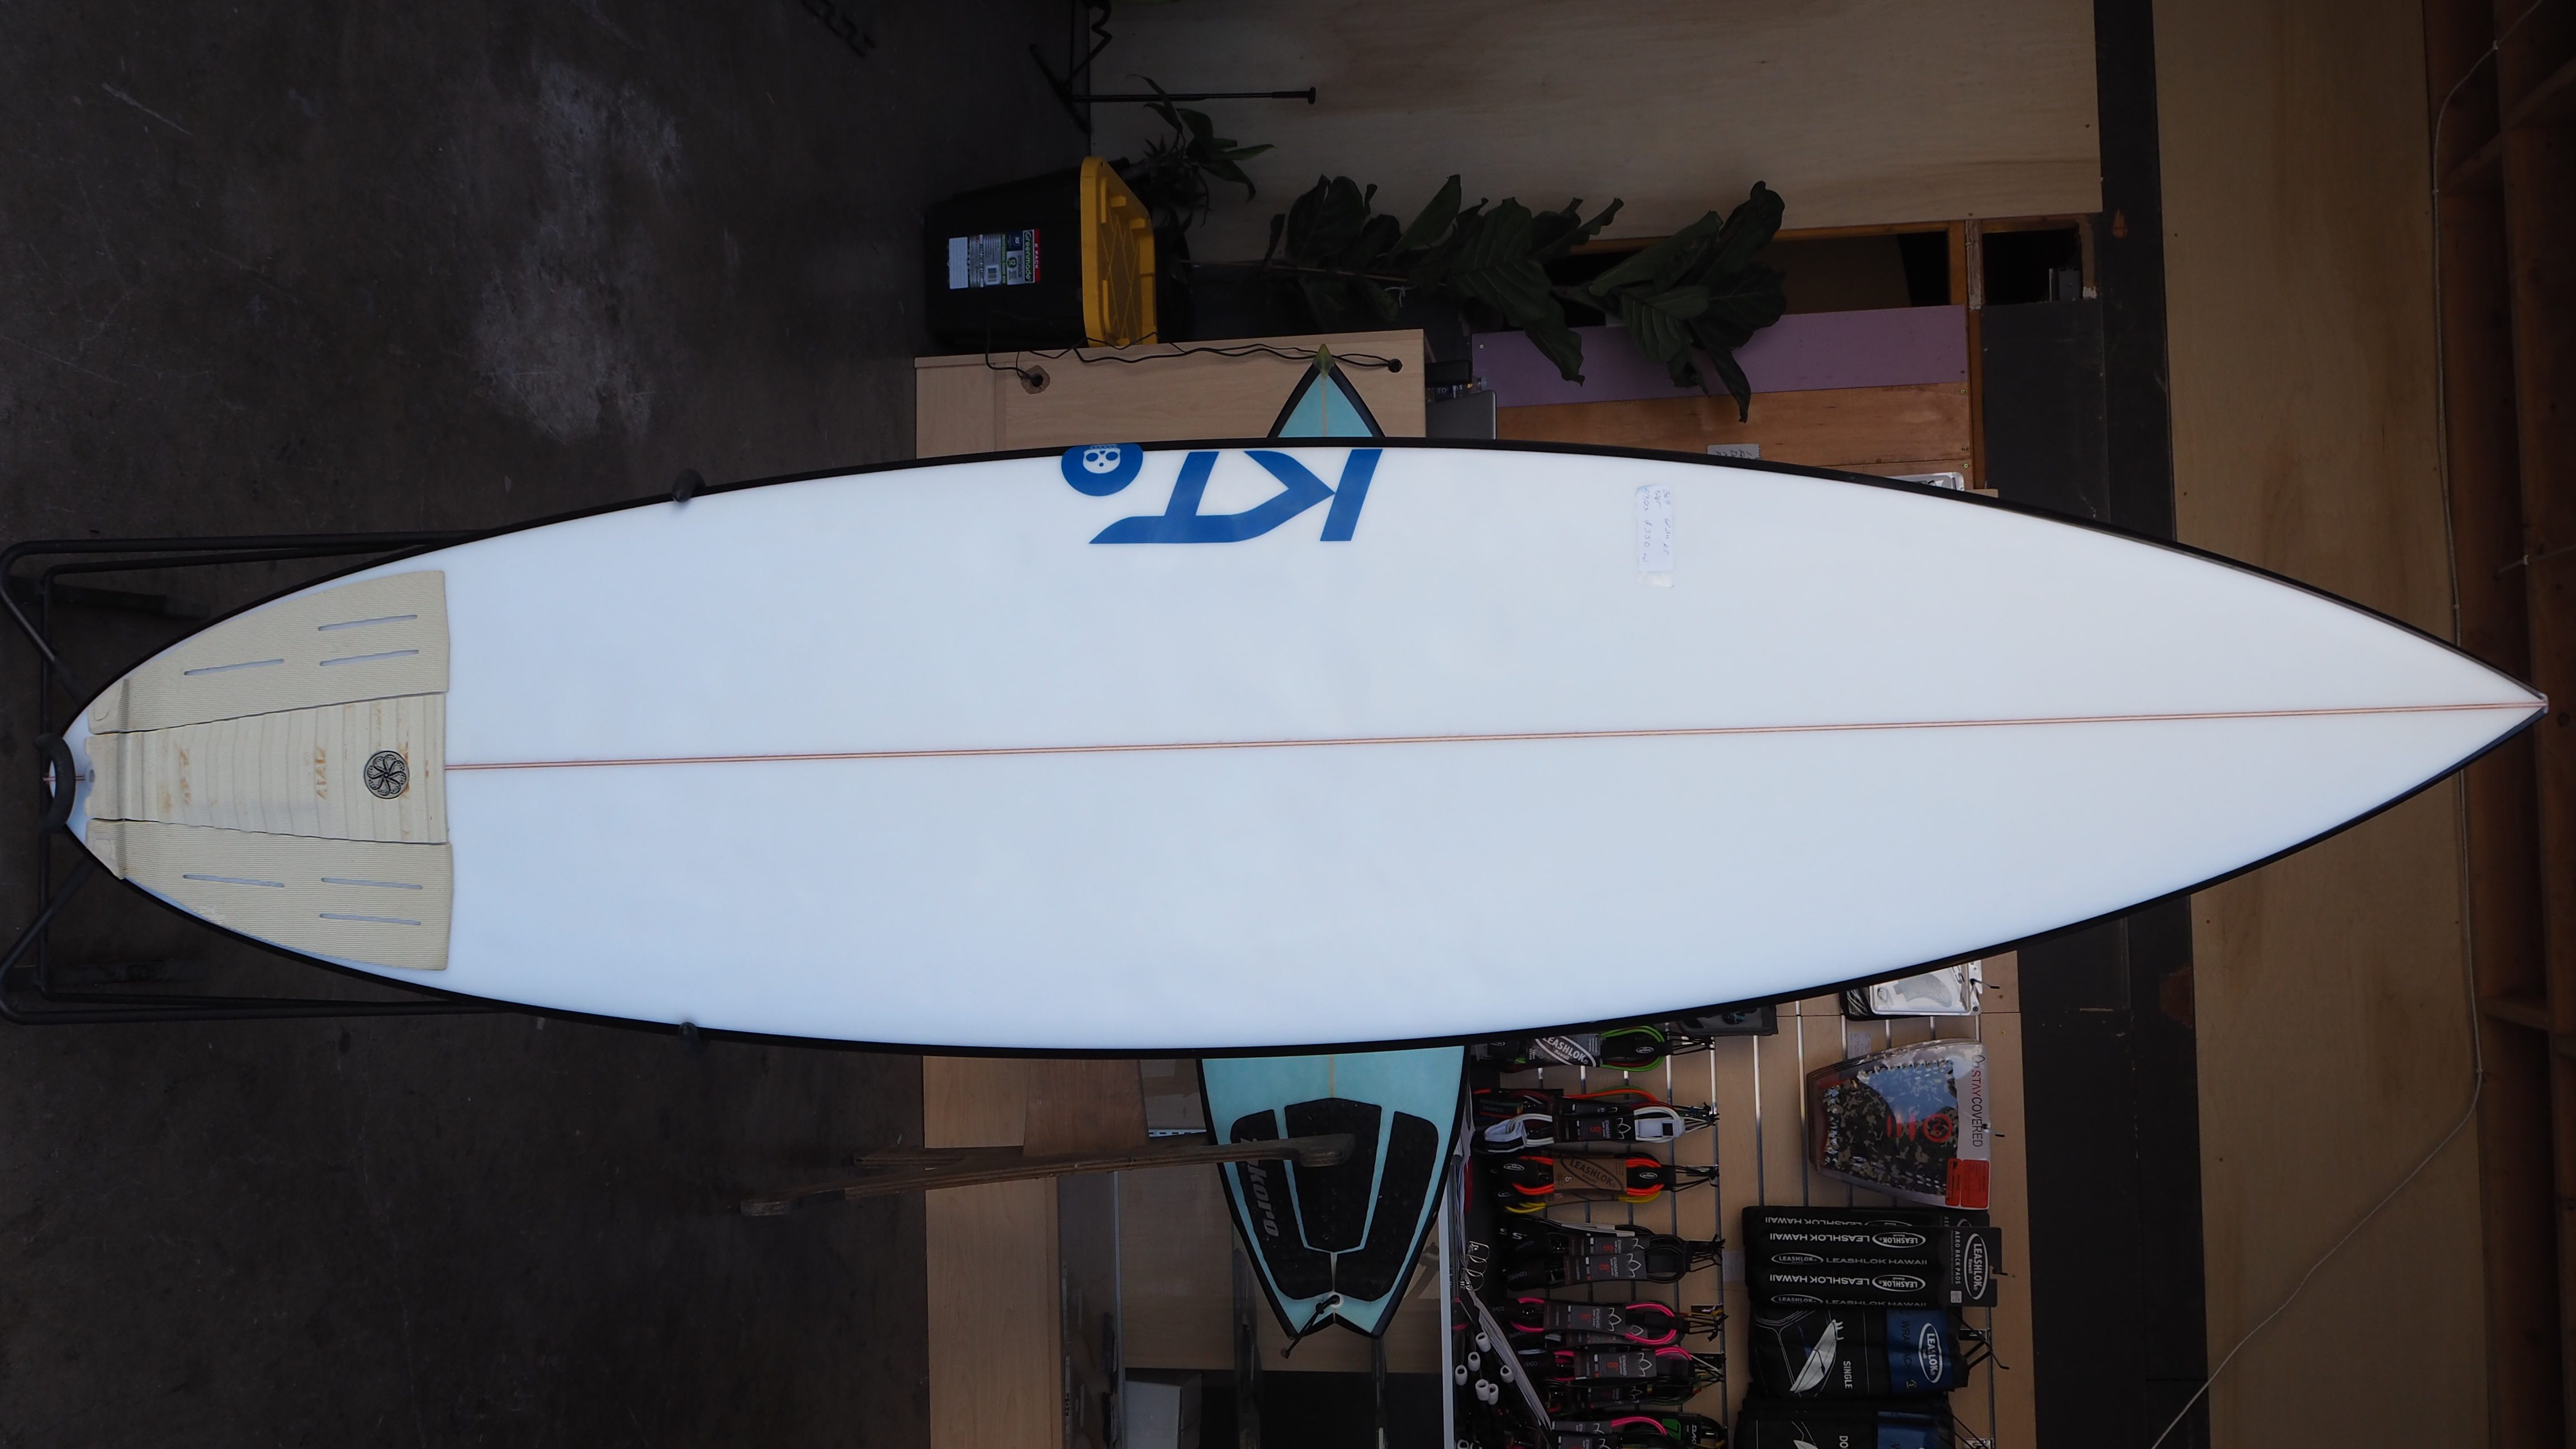 Used Surfboards Hawaii – Used Surfboards Hawaii